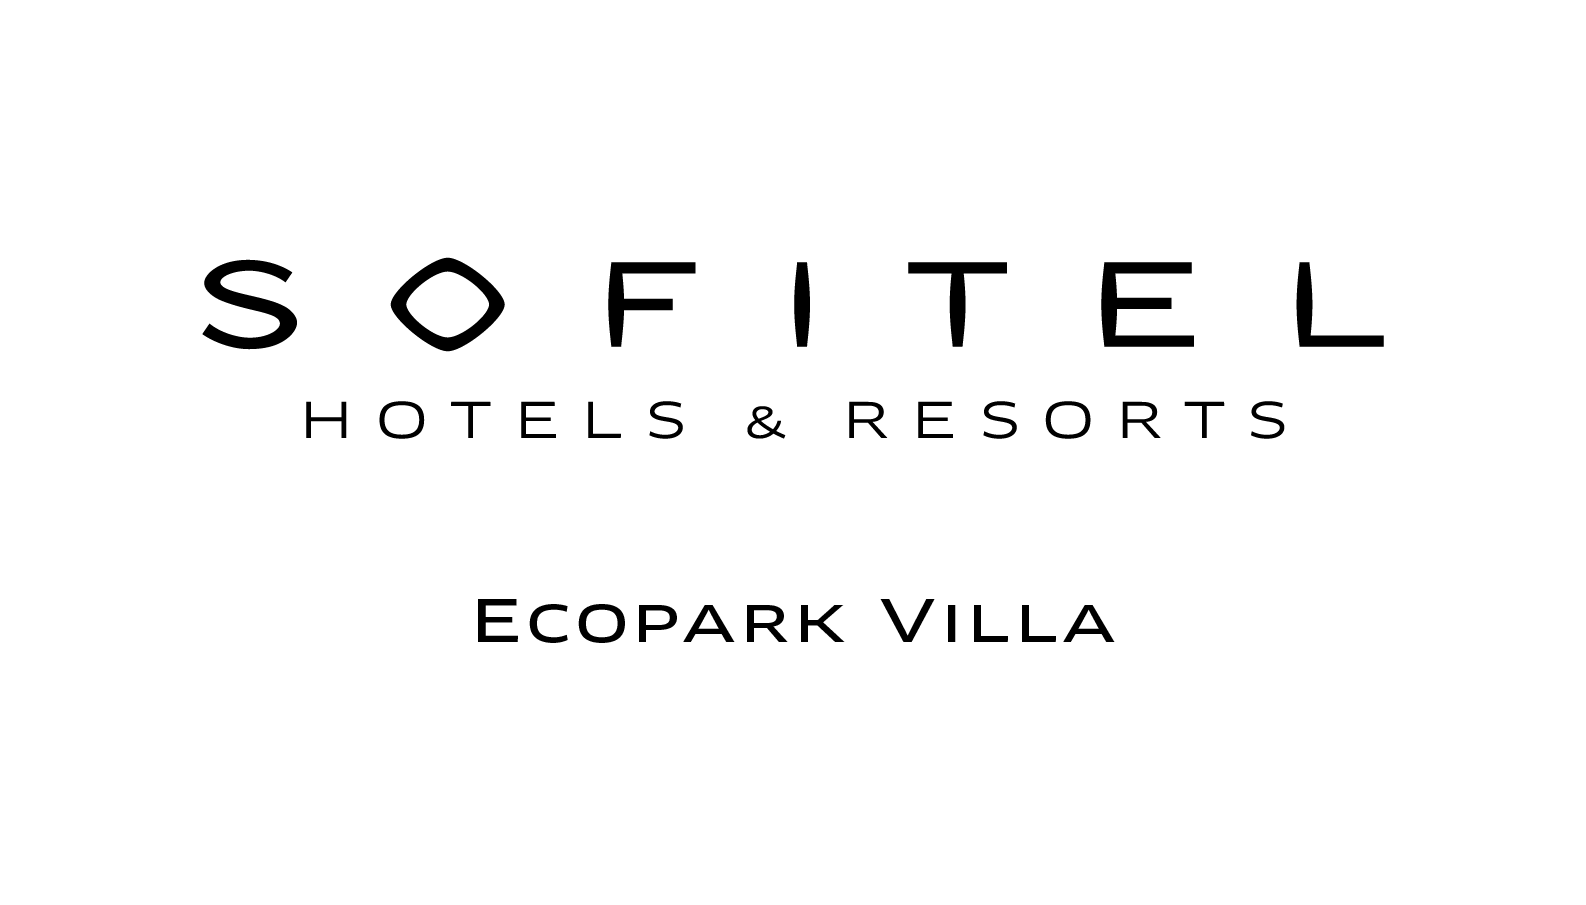 Sofitel Hotels & Resorts Ecopark Villa